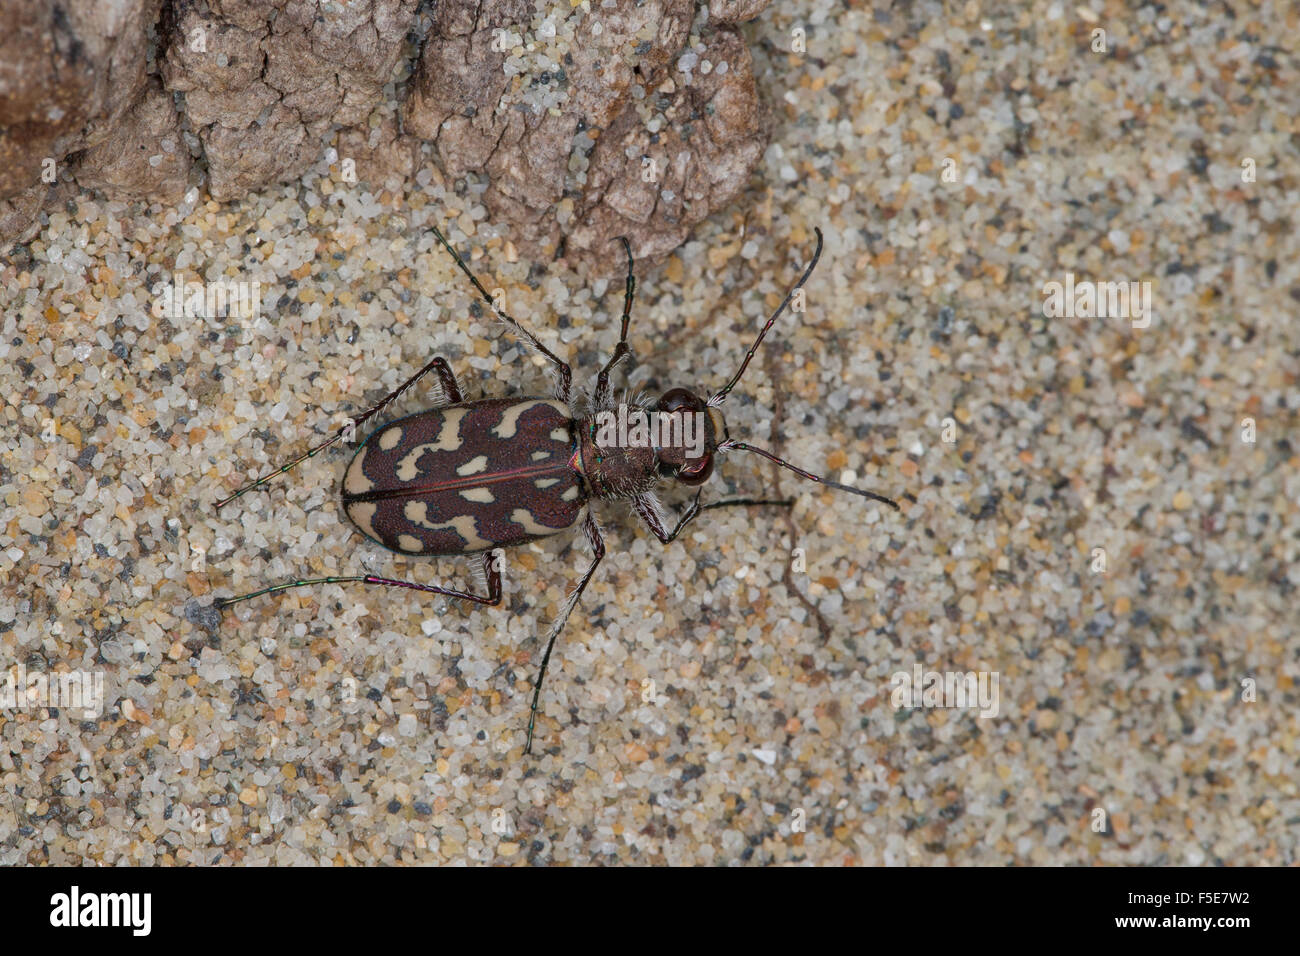 Tiger Beetle, Sandlaufkäfer, Sand-Laufkäfer, Lophyra flexuosa, Cicindela flexuosa, Cicindelidae, Tiger Beetles Stock Photo